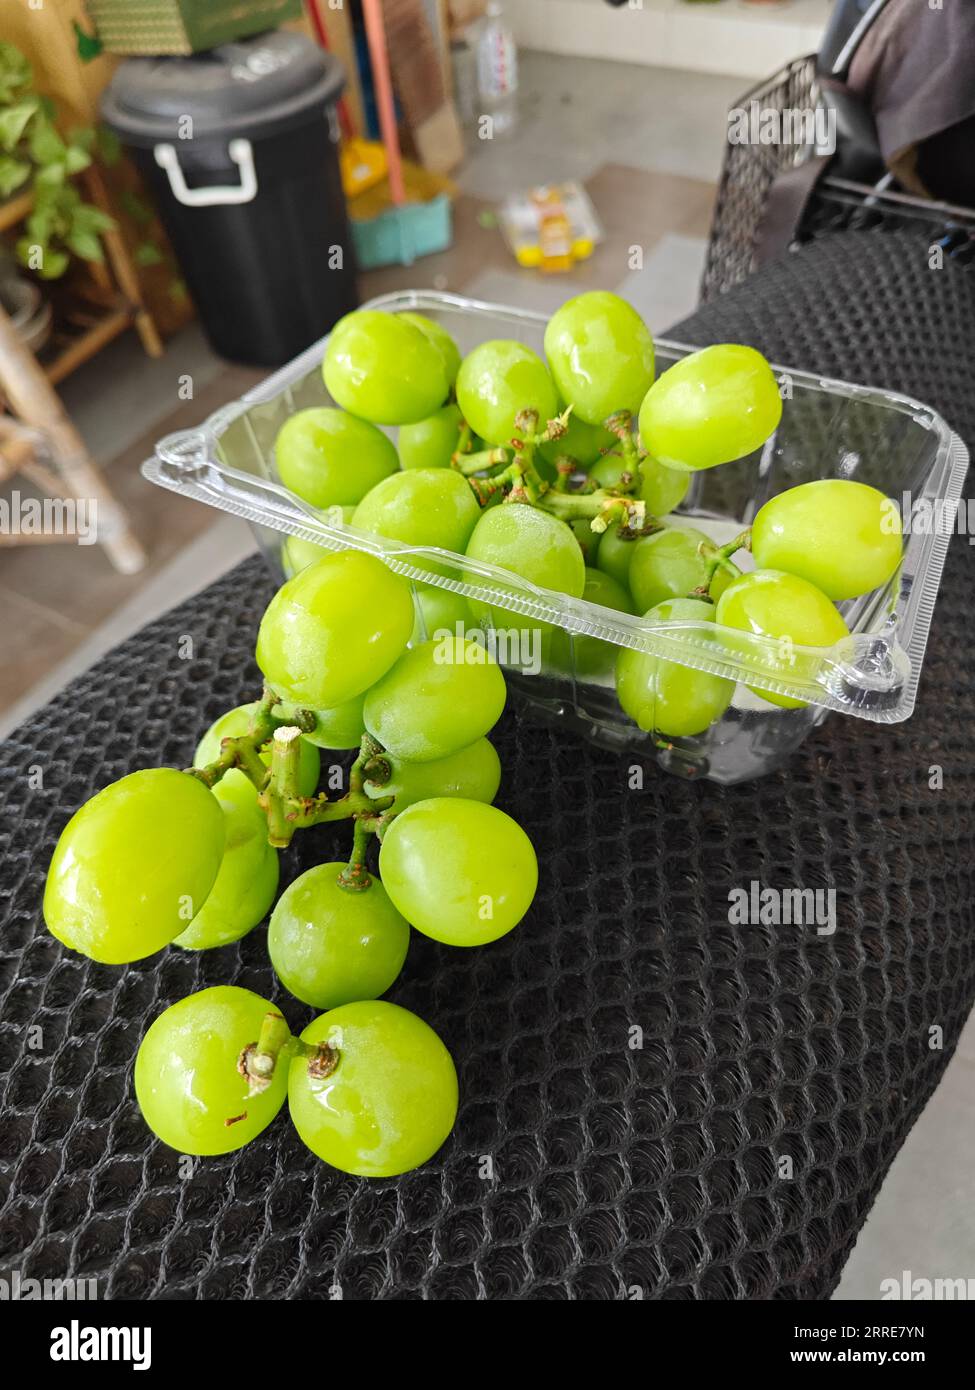 grappolo di uva fresca di moscato d'oro verdastro. Foto Stock